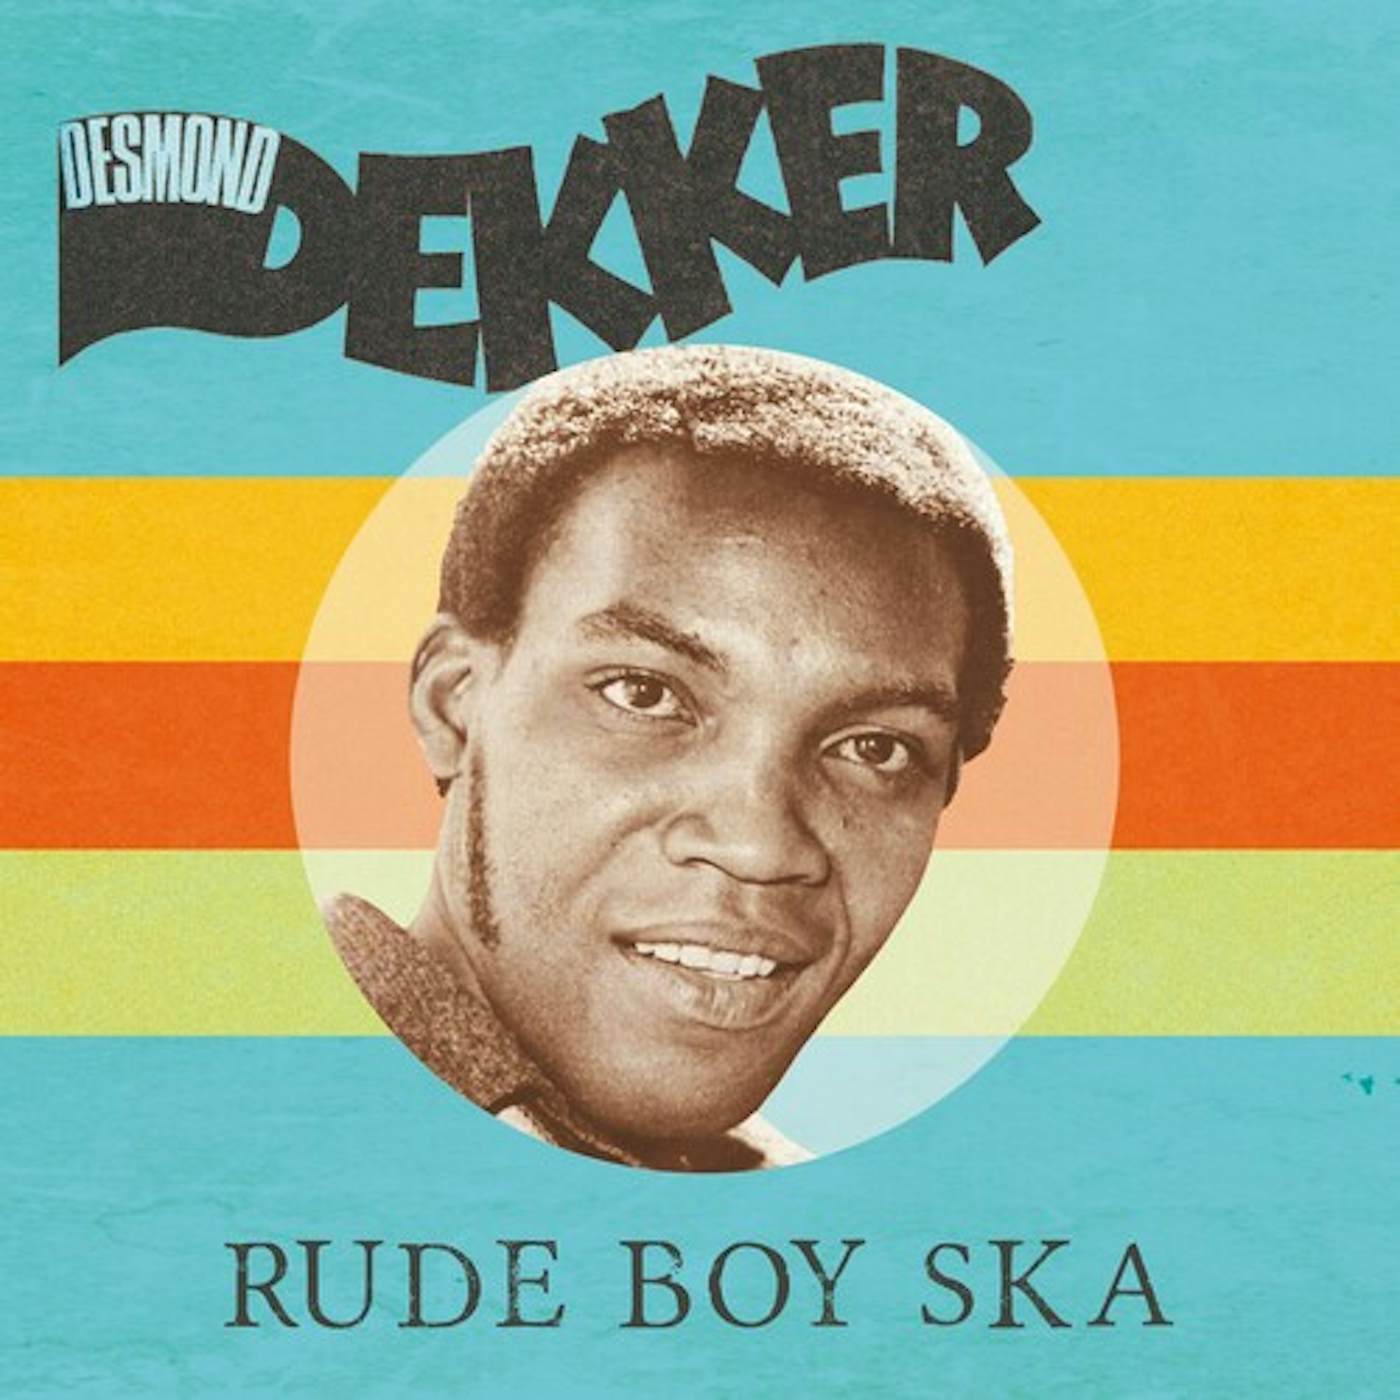 Desmond Dekker Rude Boy Ska Vinyl Record